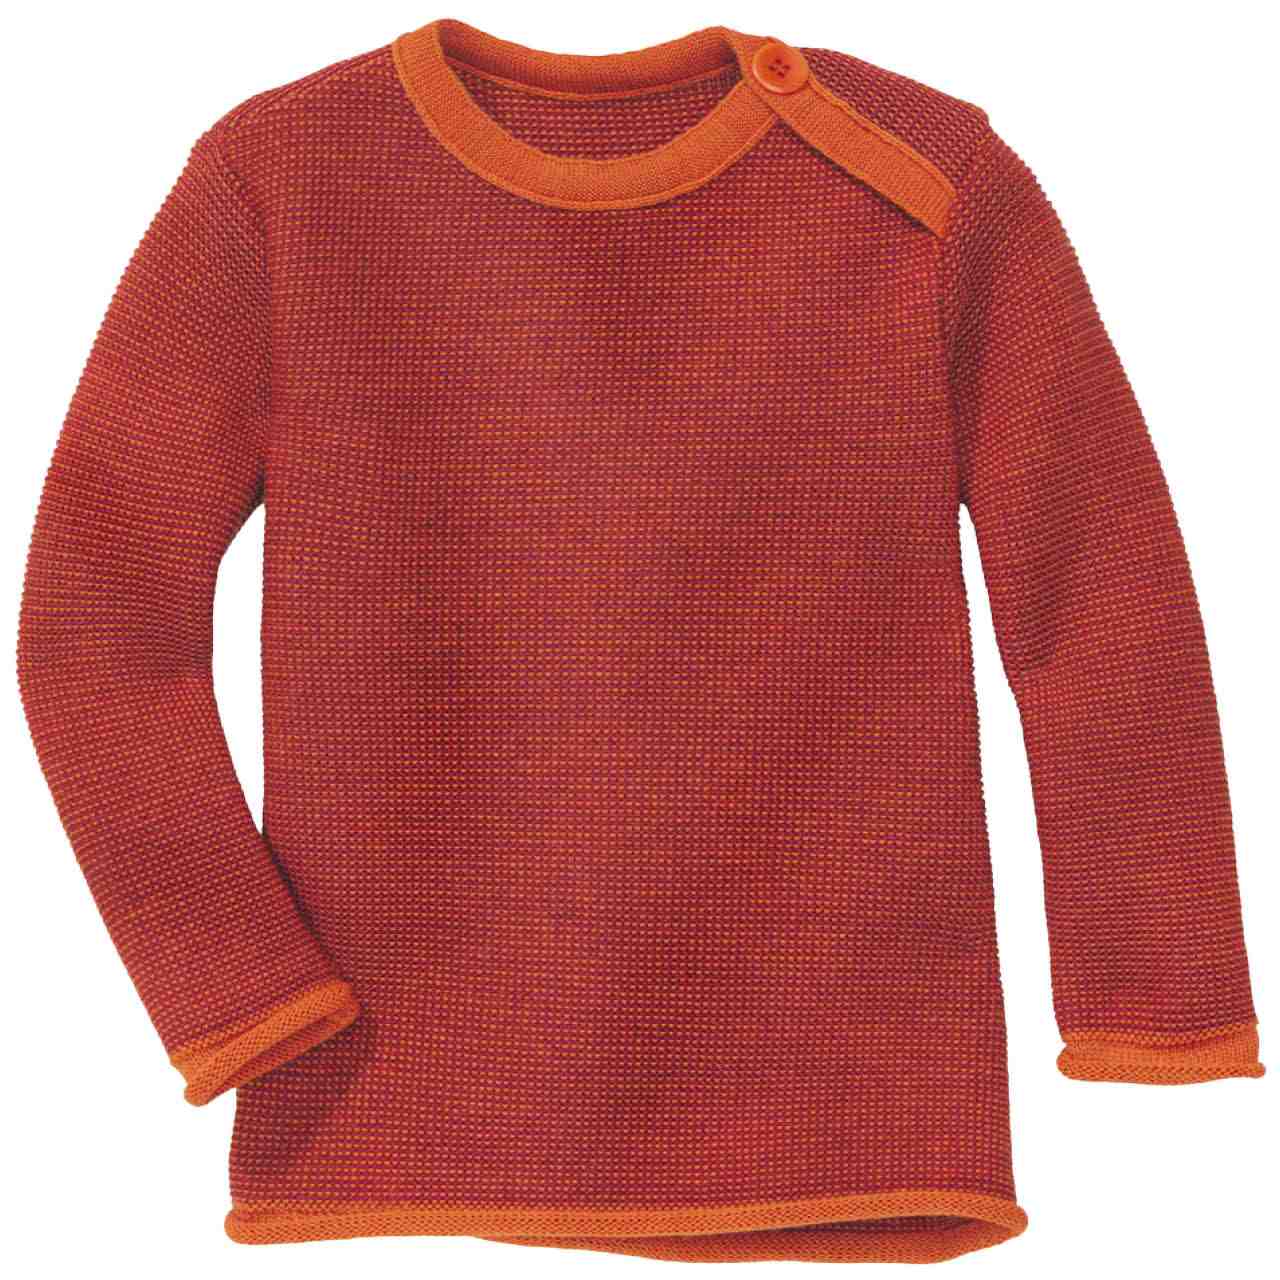 Pullover Baby Schurwolle orange-cassis